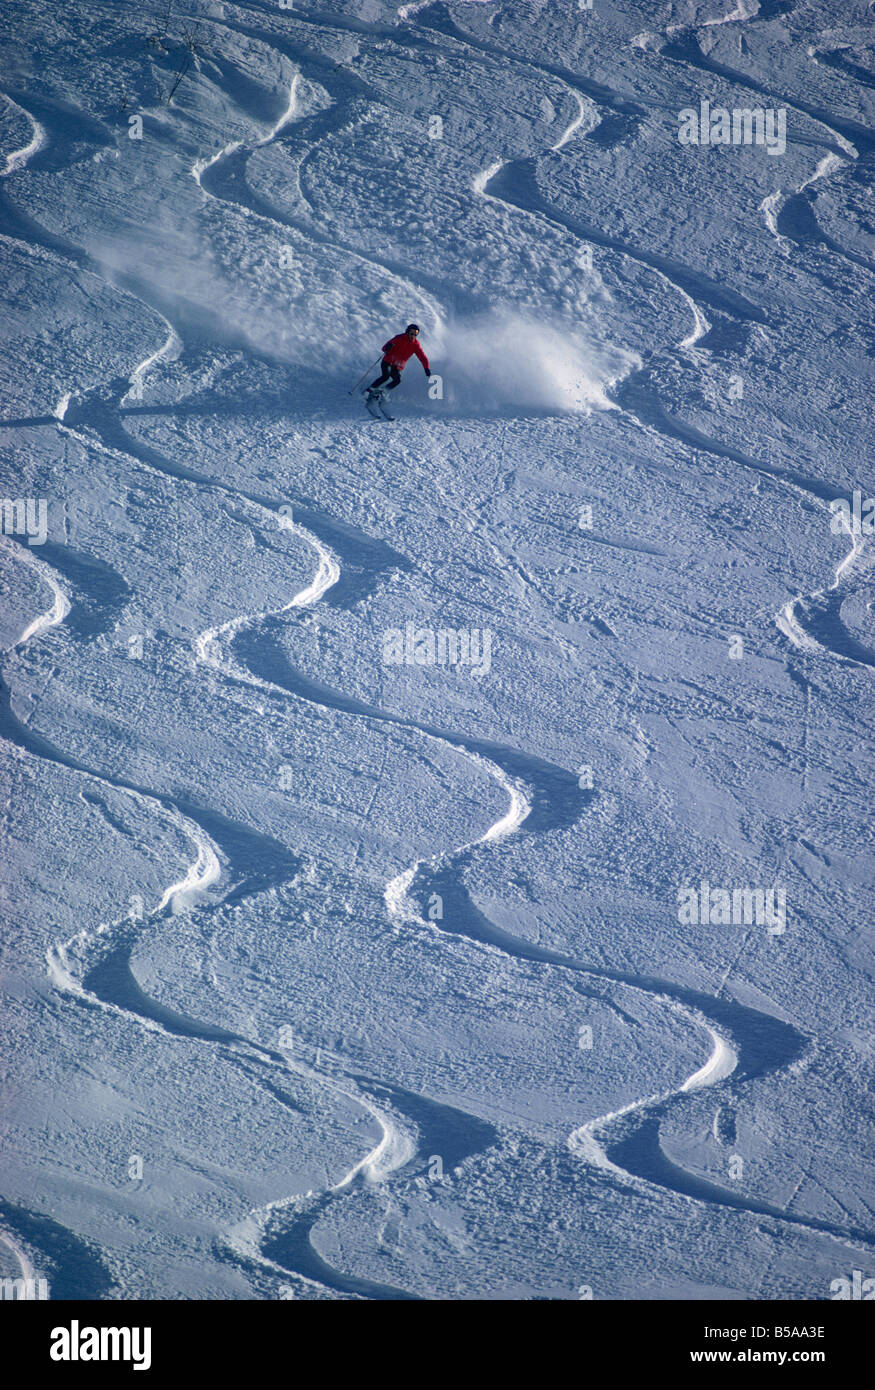 Skiers in powder snow Stock Photo